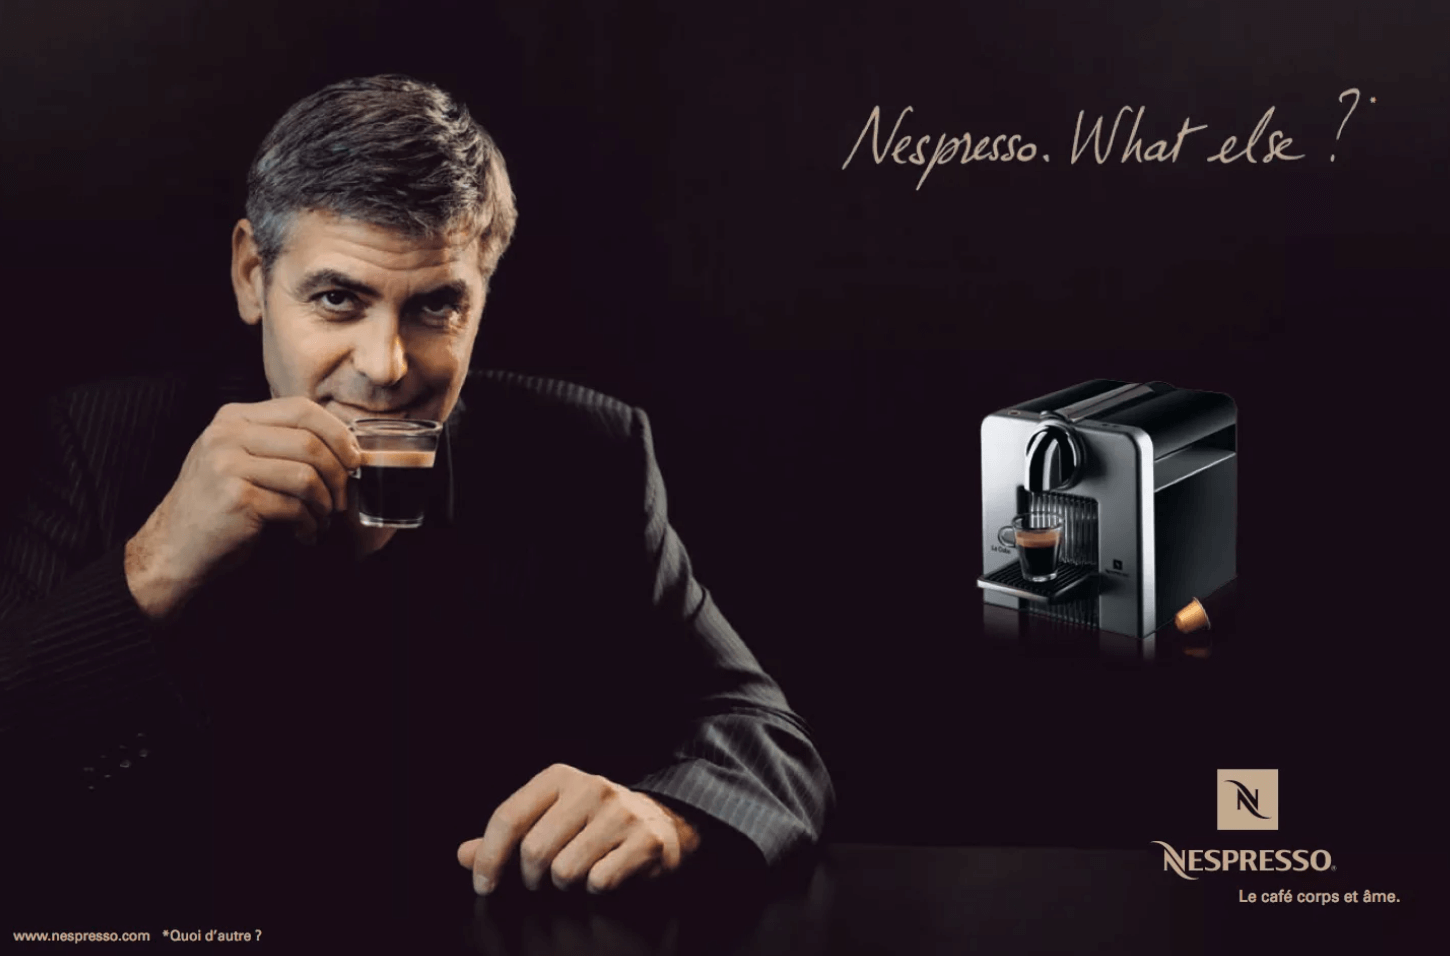 Реклама кофе и кофемашин Nespresso со слоганом «What else?» («Что же еще?»)